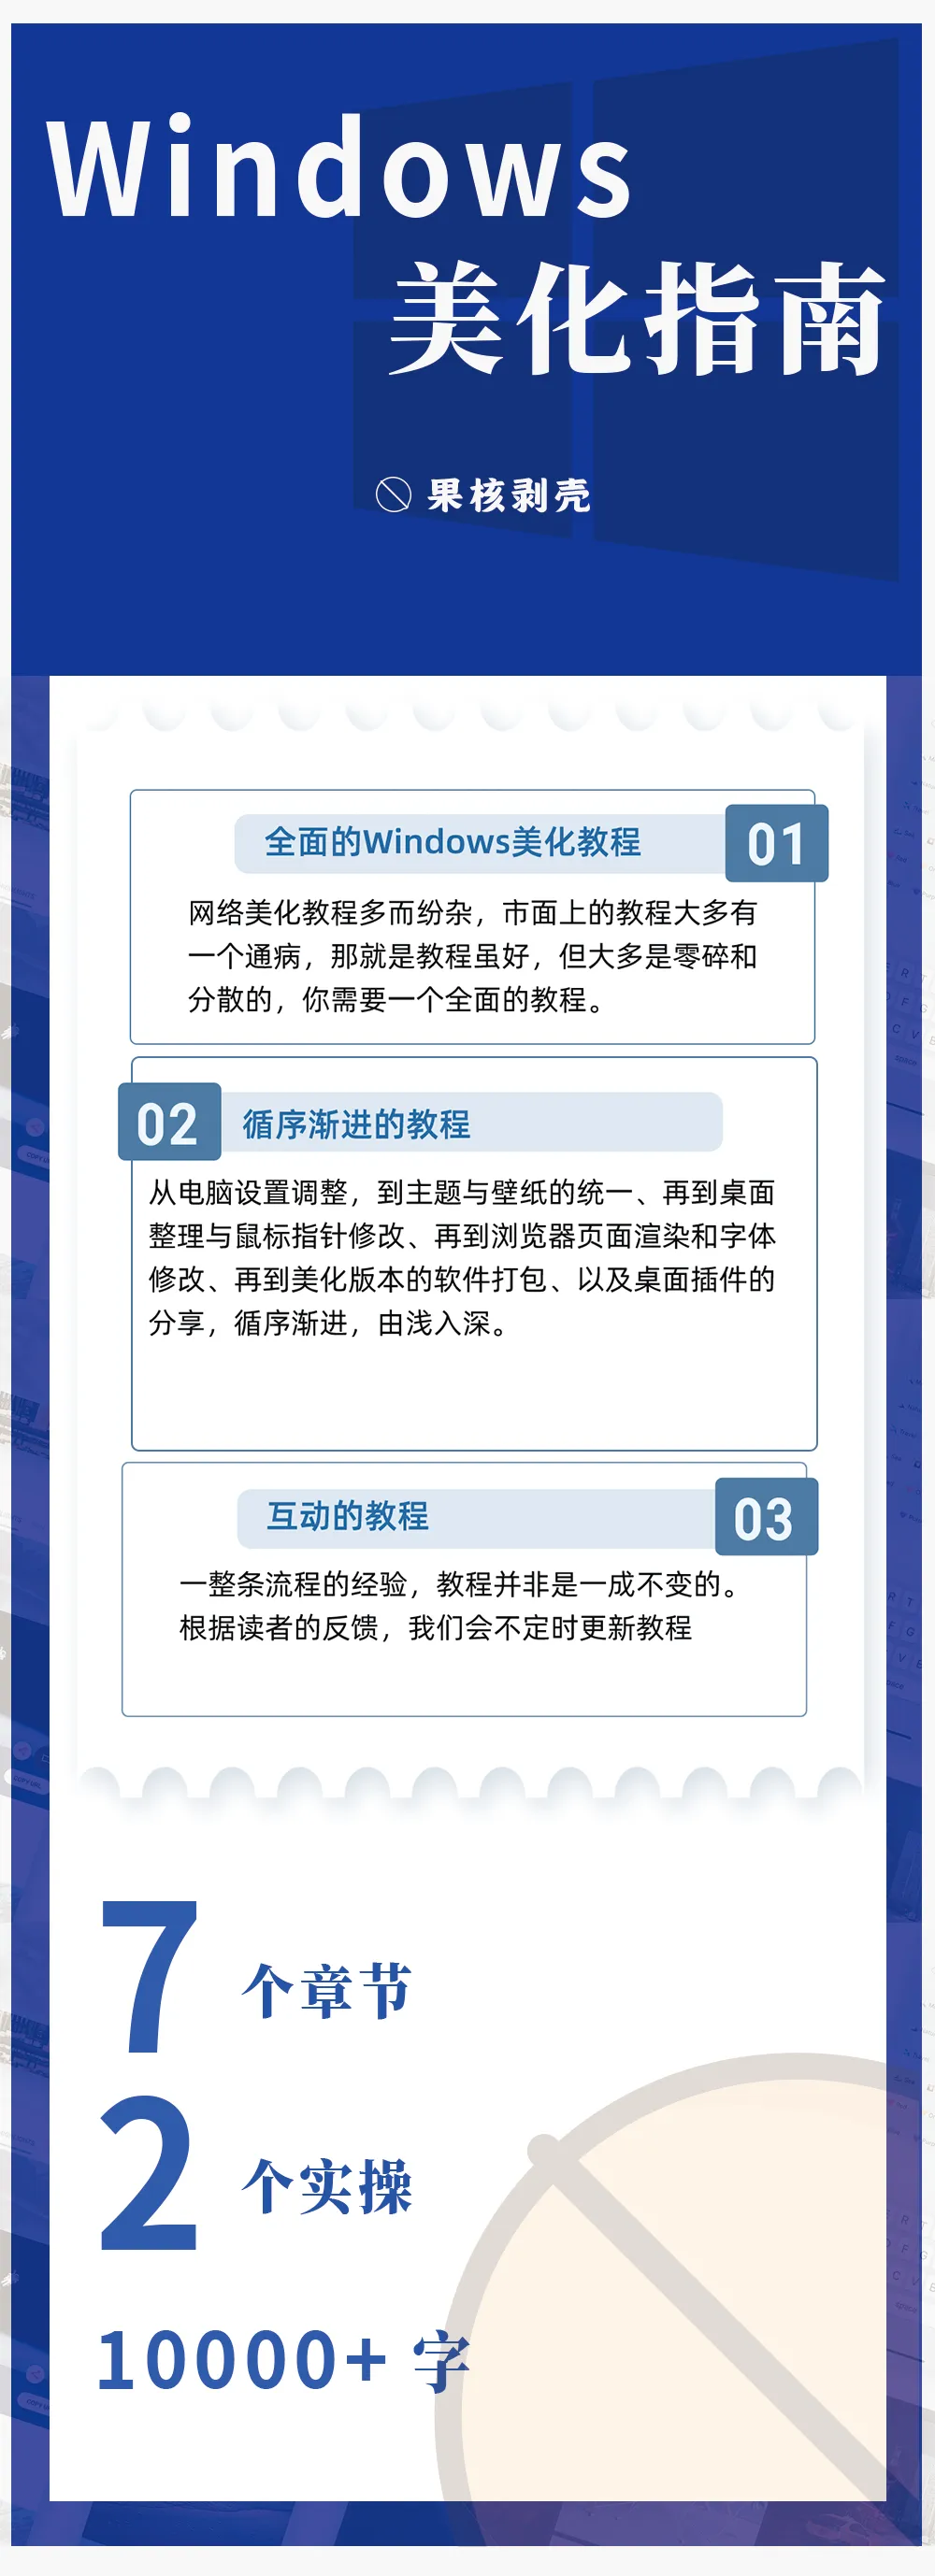 【精品图文】Windows美化指南